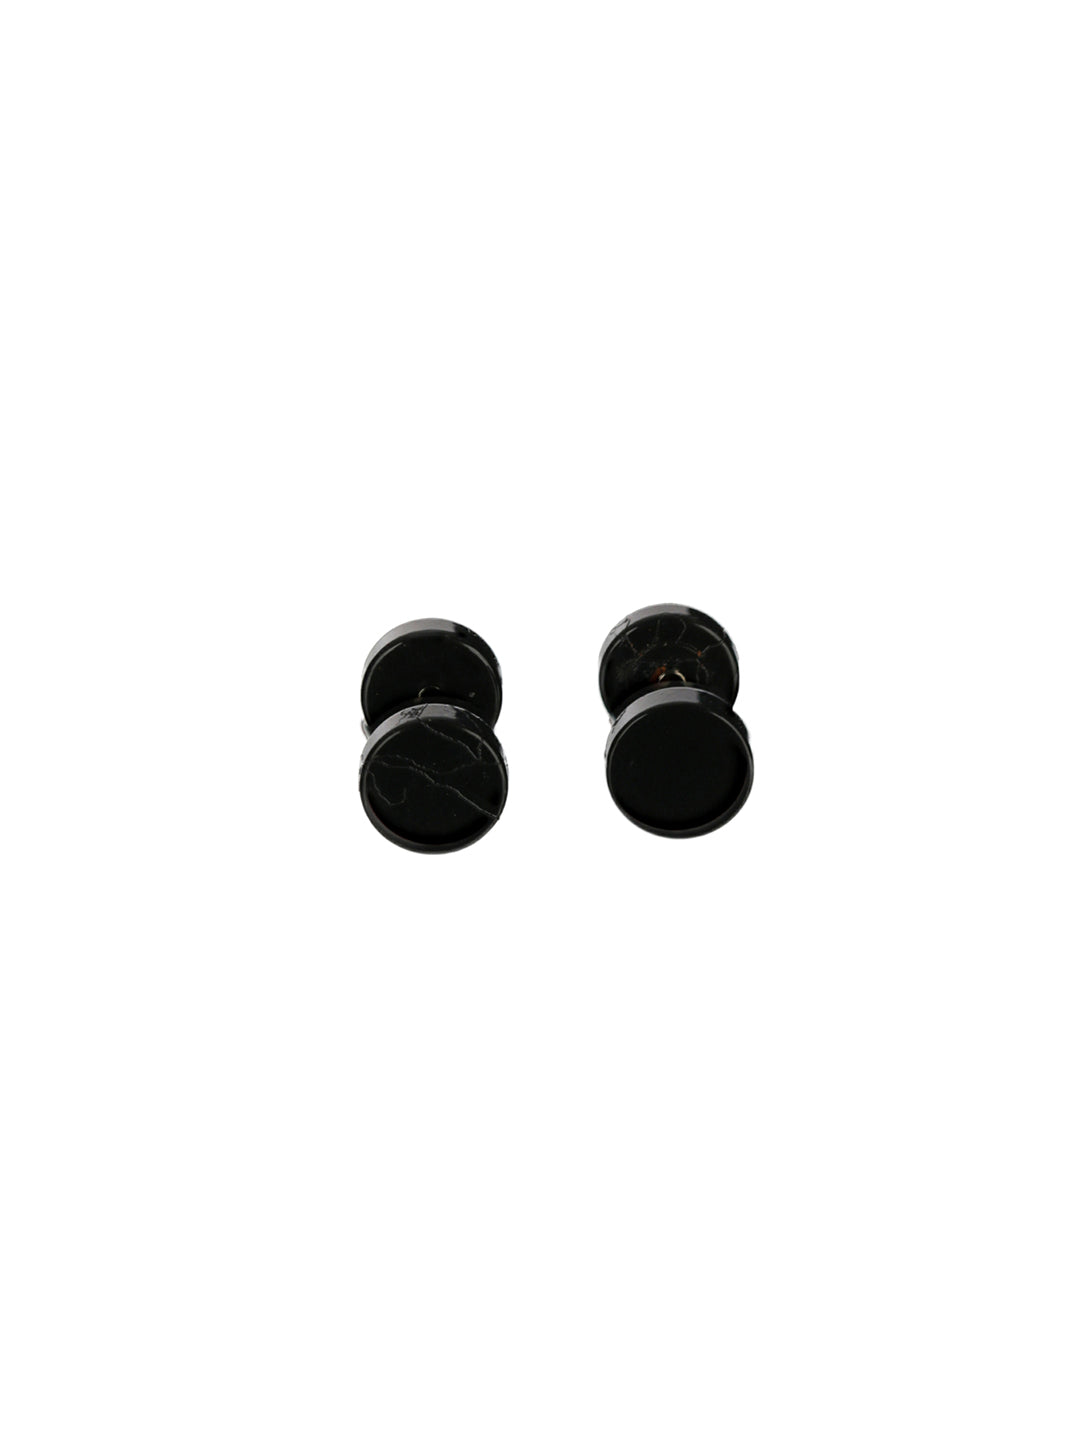 Bold by Priyaasi Black Round Stud Earrings for Men - 7 mm